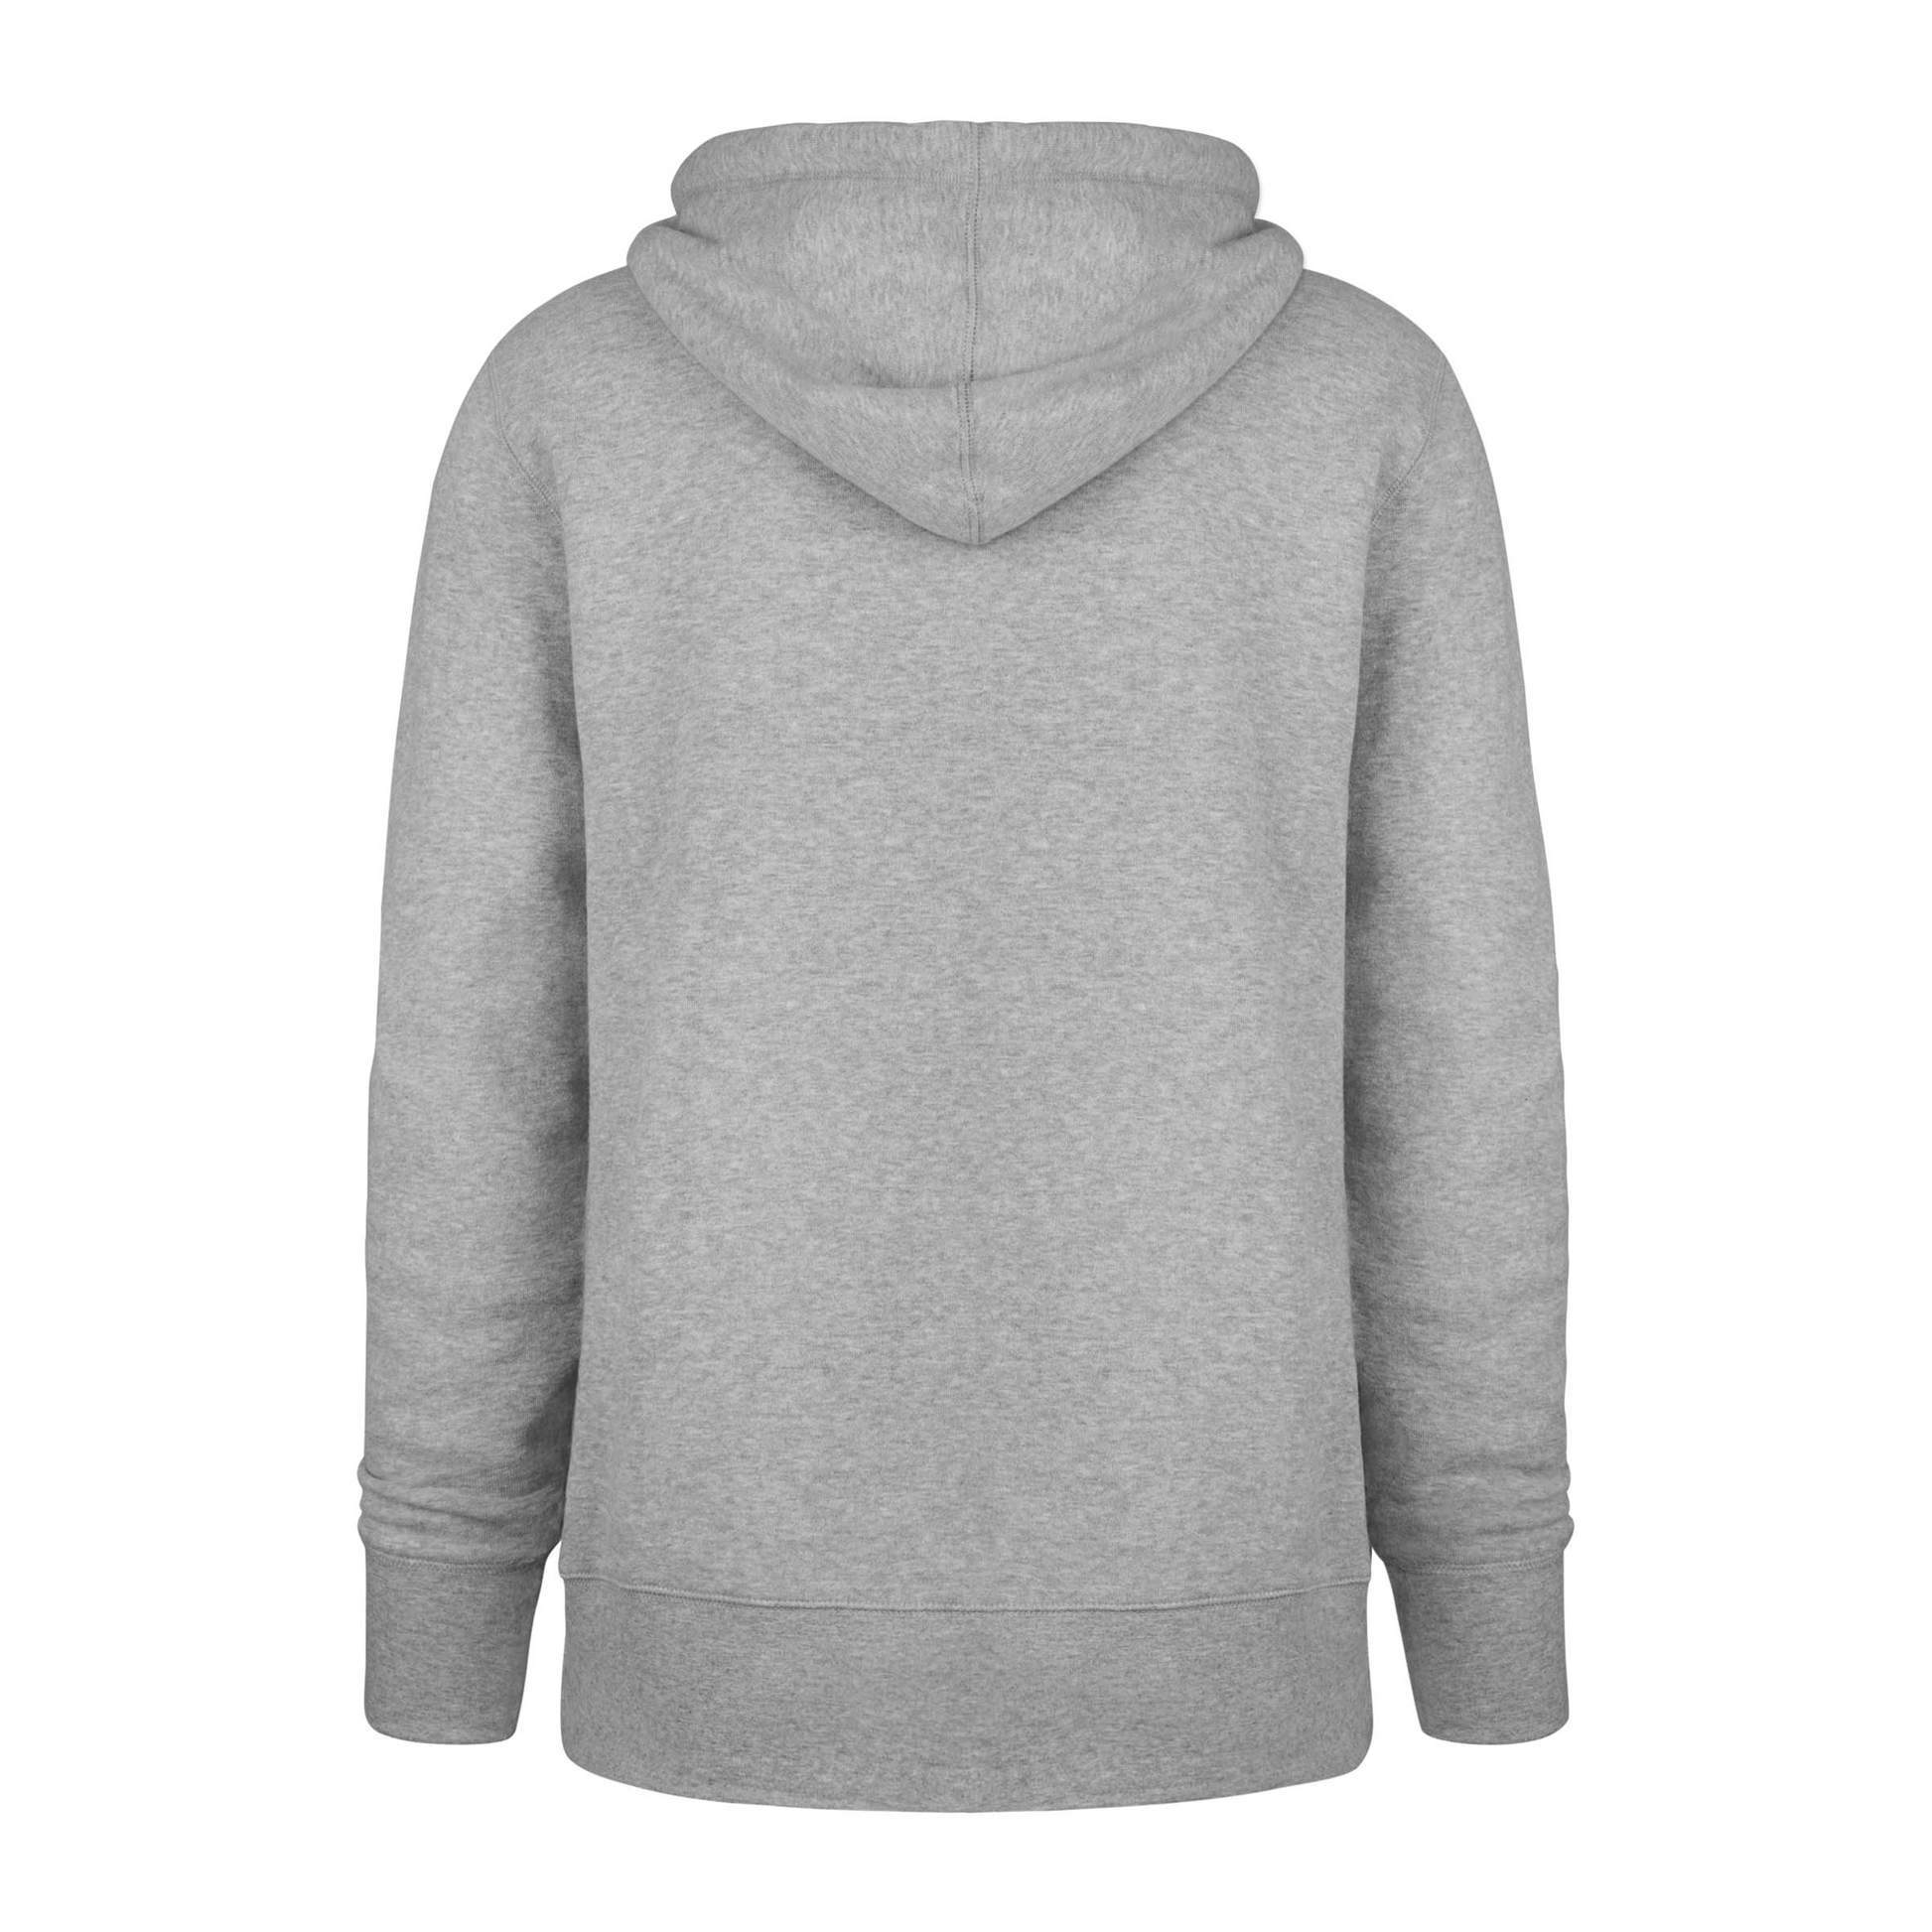 Back: Blank gray hoodie